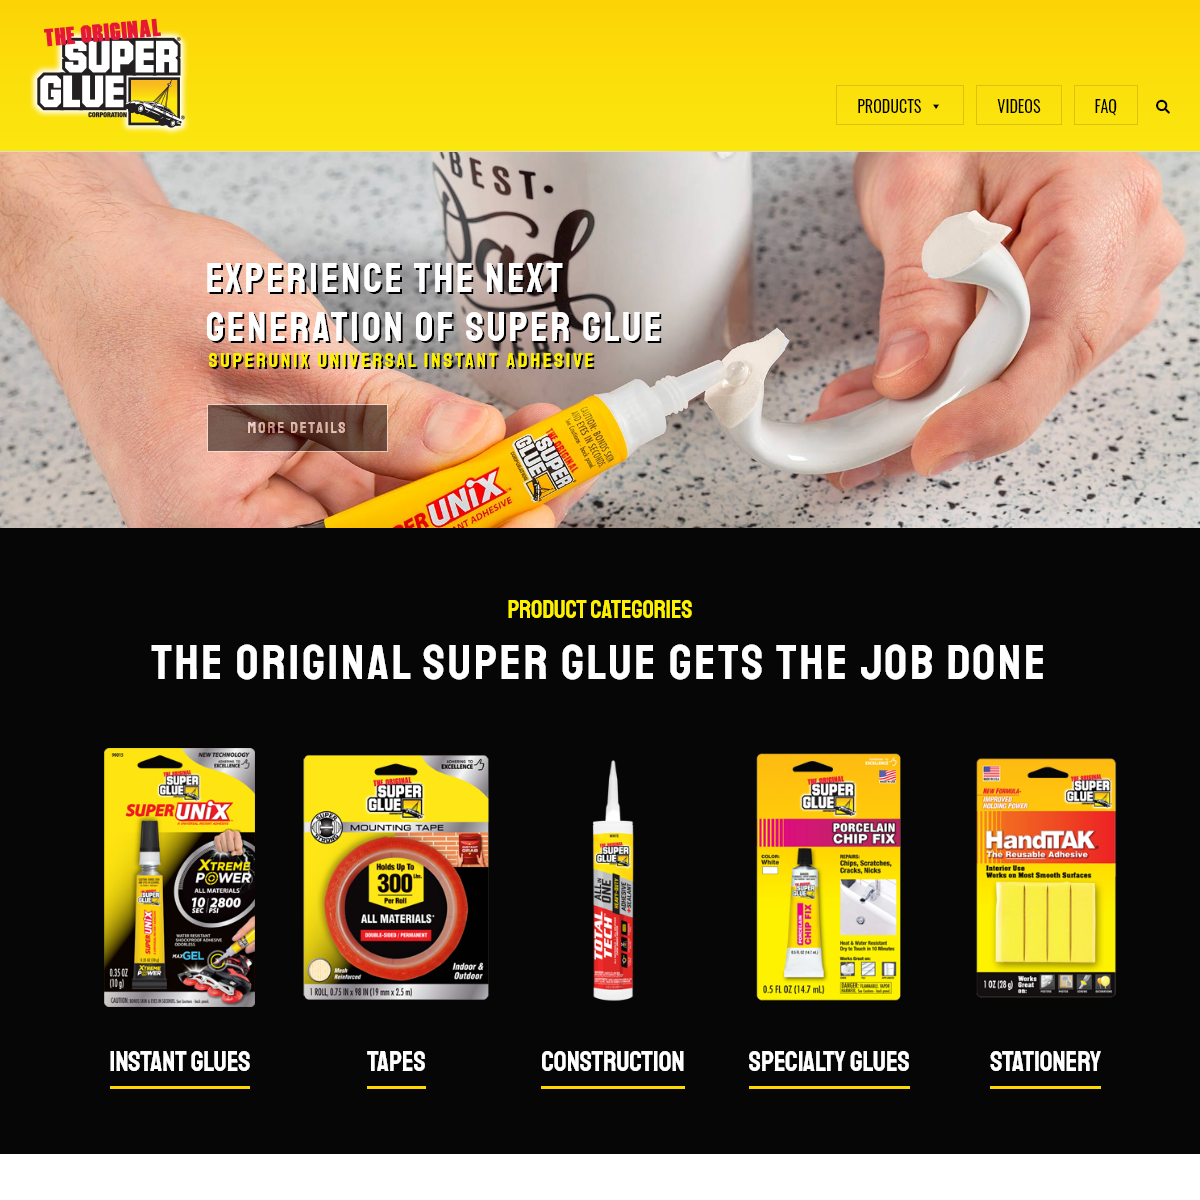 Super Glue Corporation - Home of The Original Super GlueÂ®